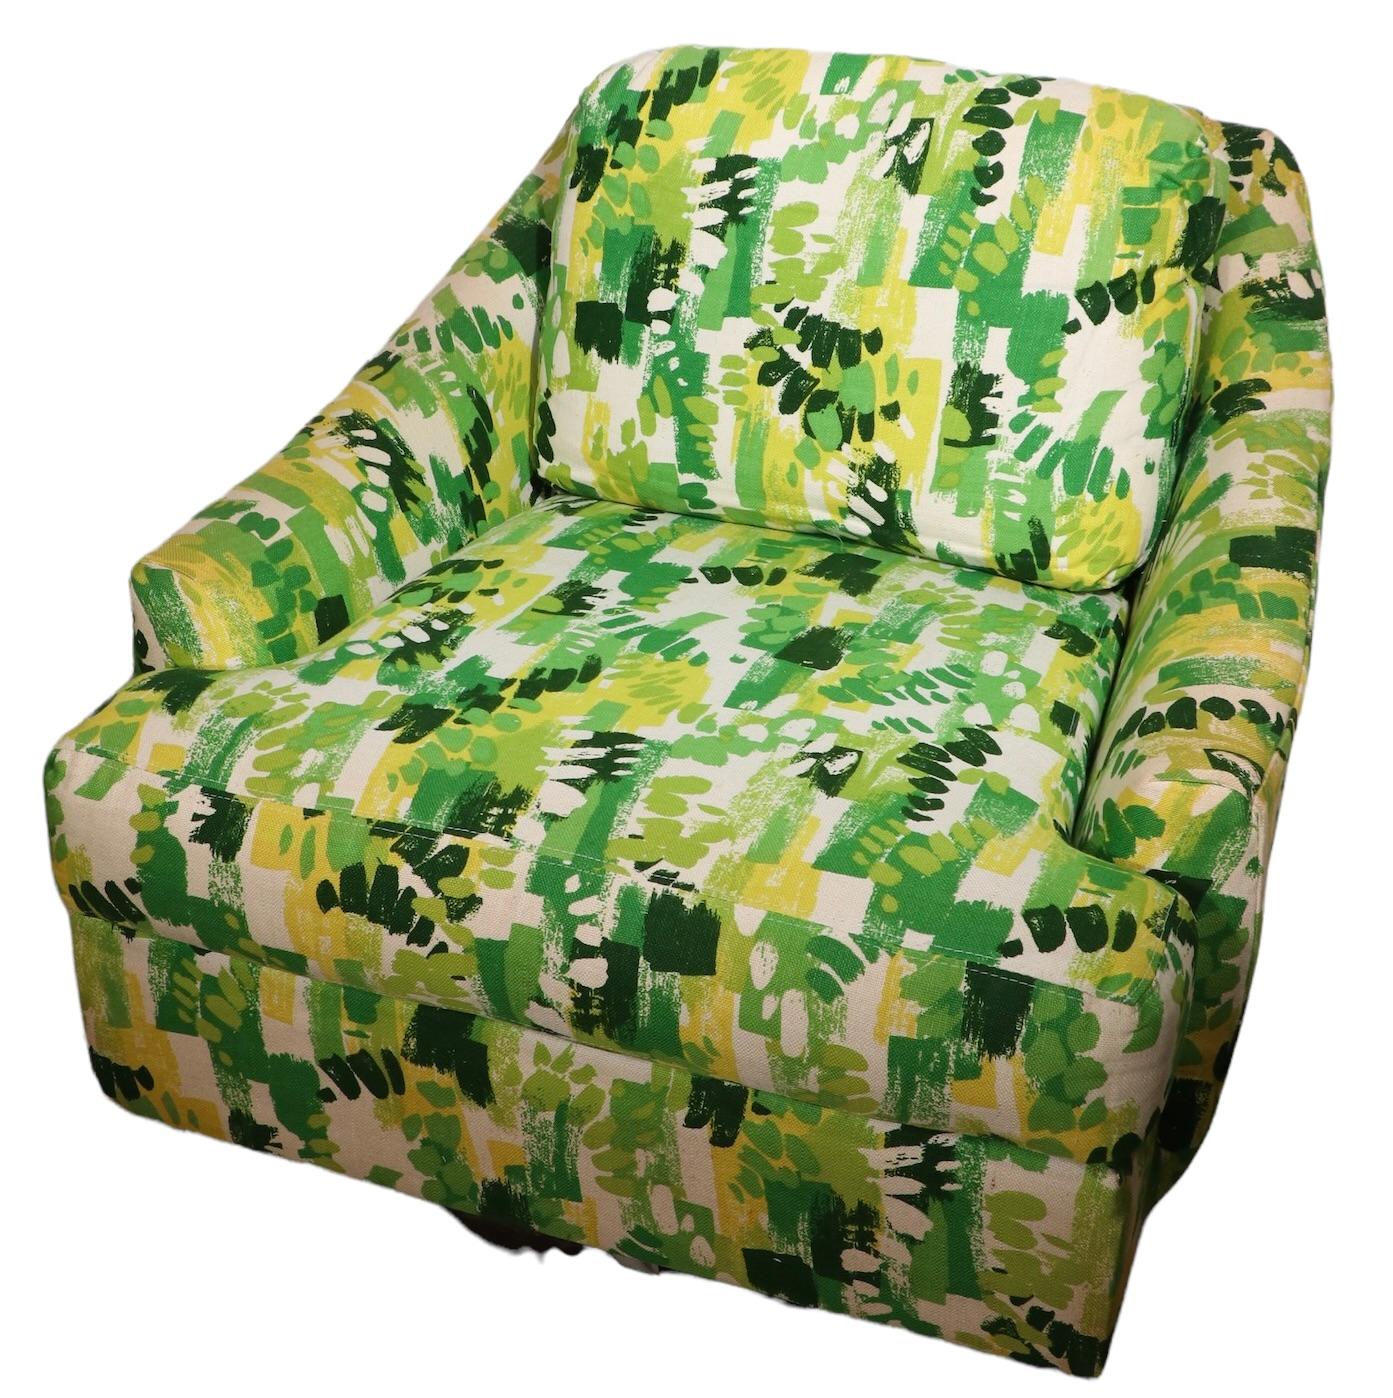 Exceptionnelle chaise de salon pivotante des années 1970 par Selig de Monroe. La chaise est dans sa tapisserie d'origine, brillante et colorée, qui est en très bon état de propreté. Le siège repose sur un socle circulaire et peut pivoter à 360